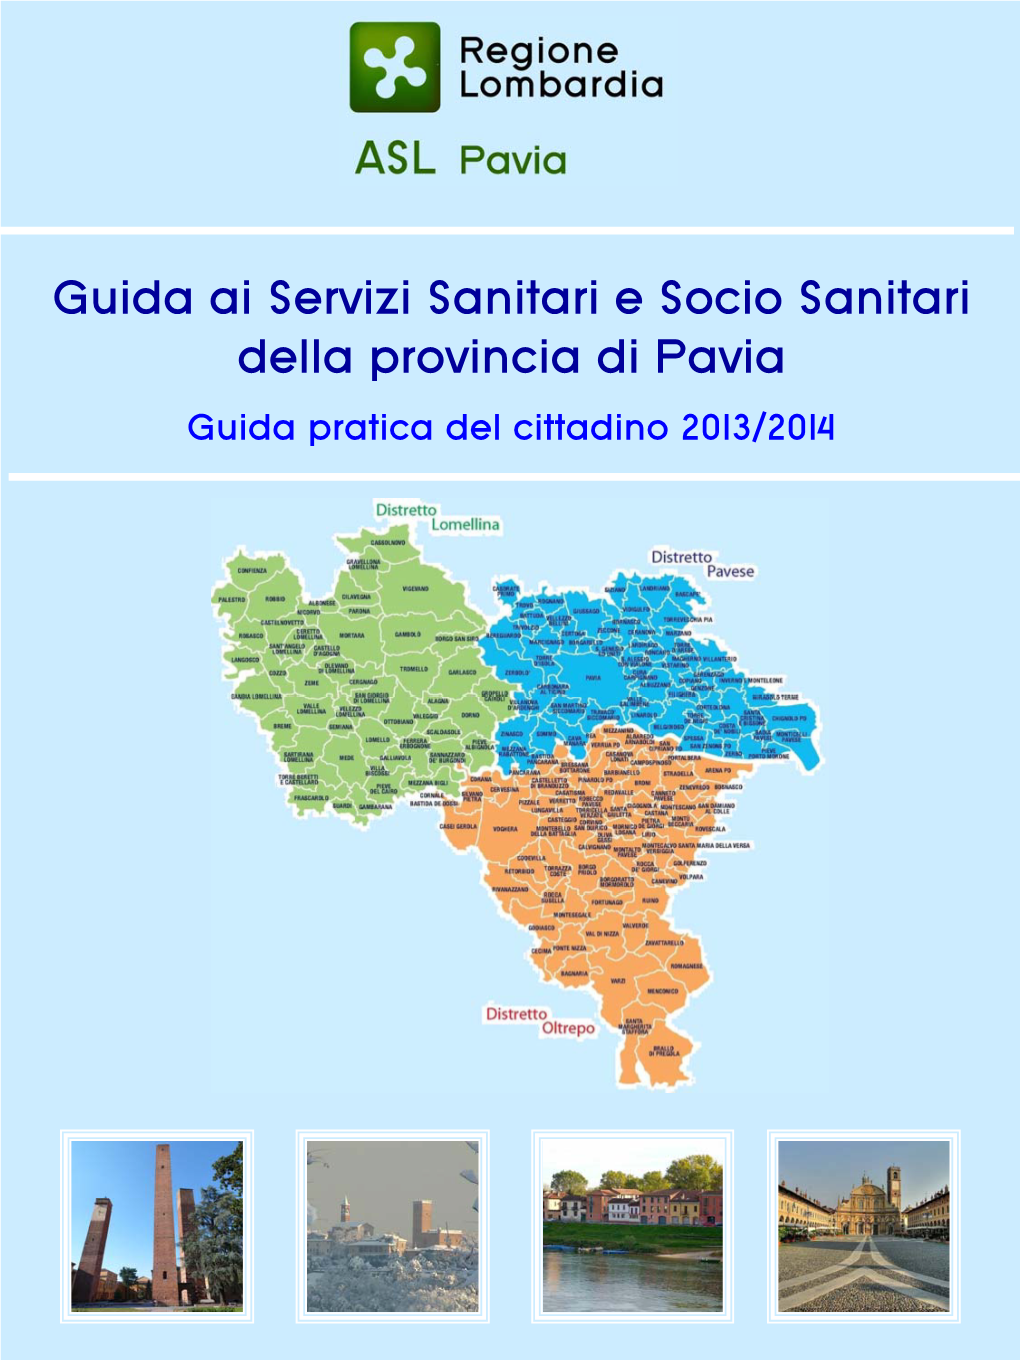 Guida Ai Servizi Sanitari E Socio Sanitari Della Provincia Di Pavia Guida Pratica Del Cittadino 2013/2014